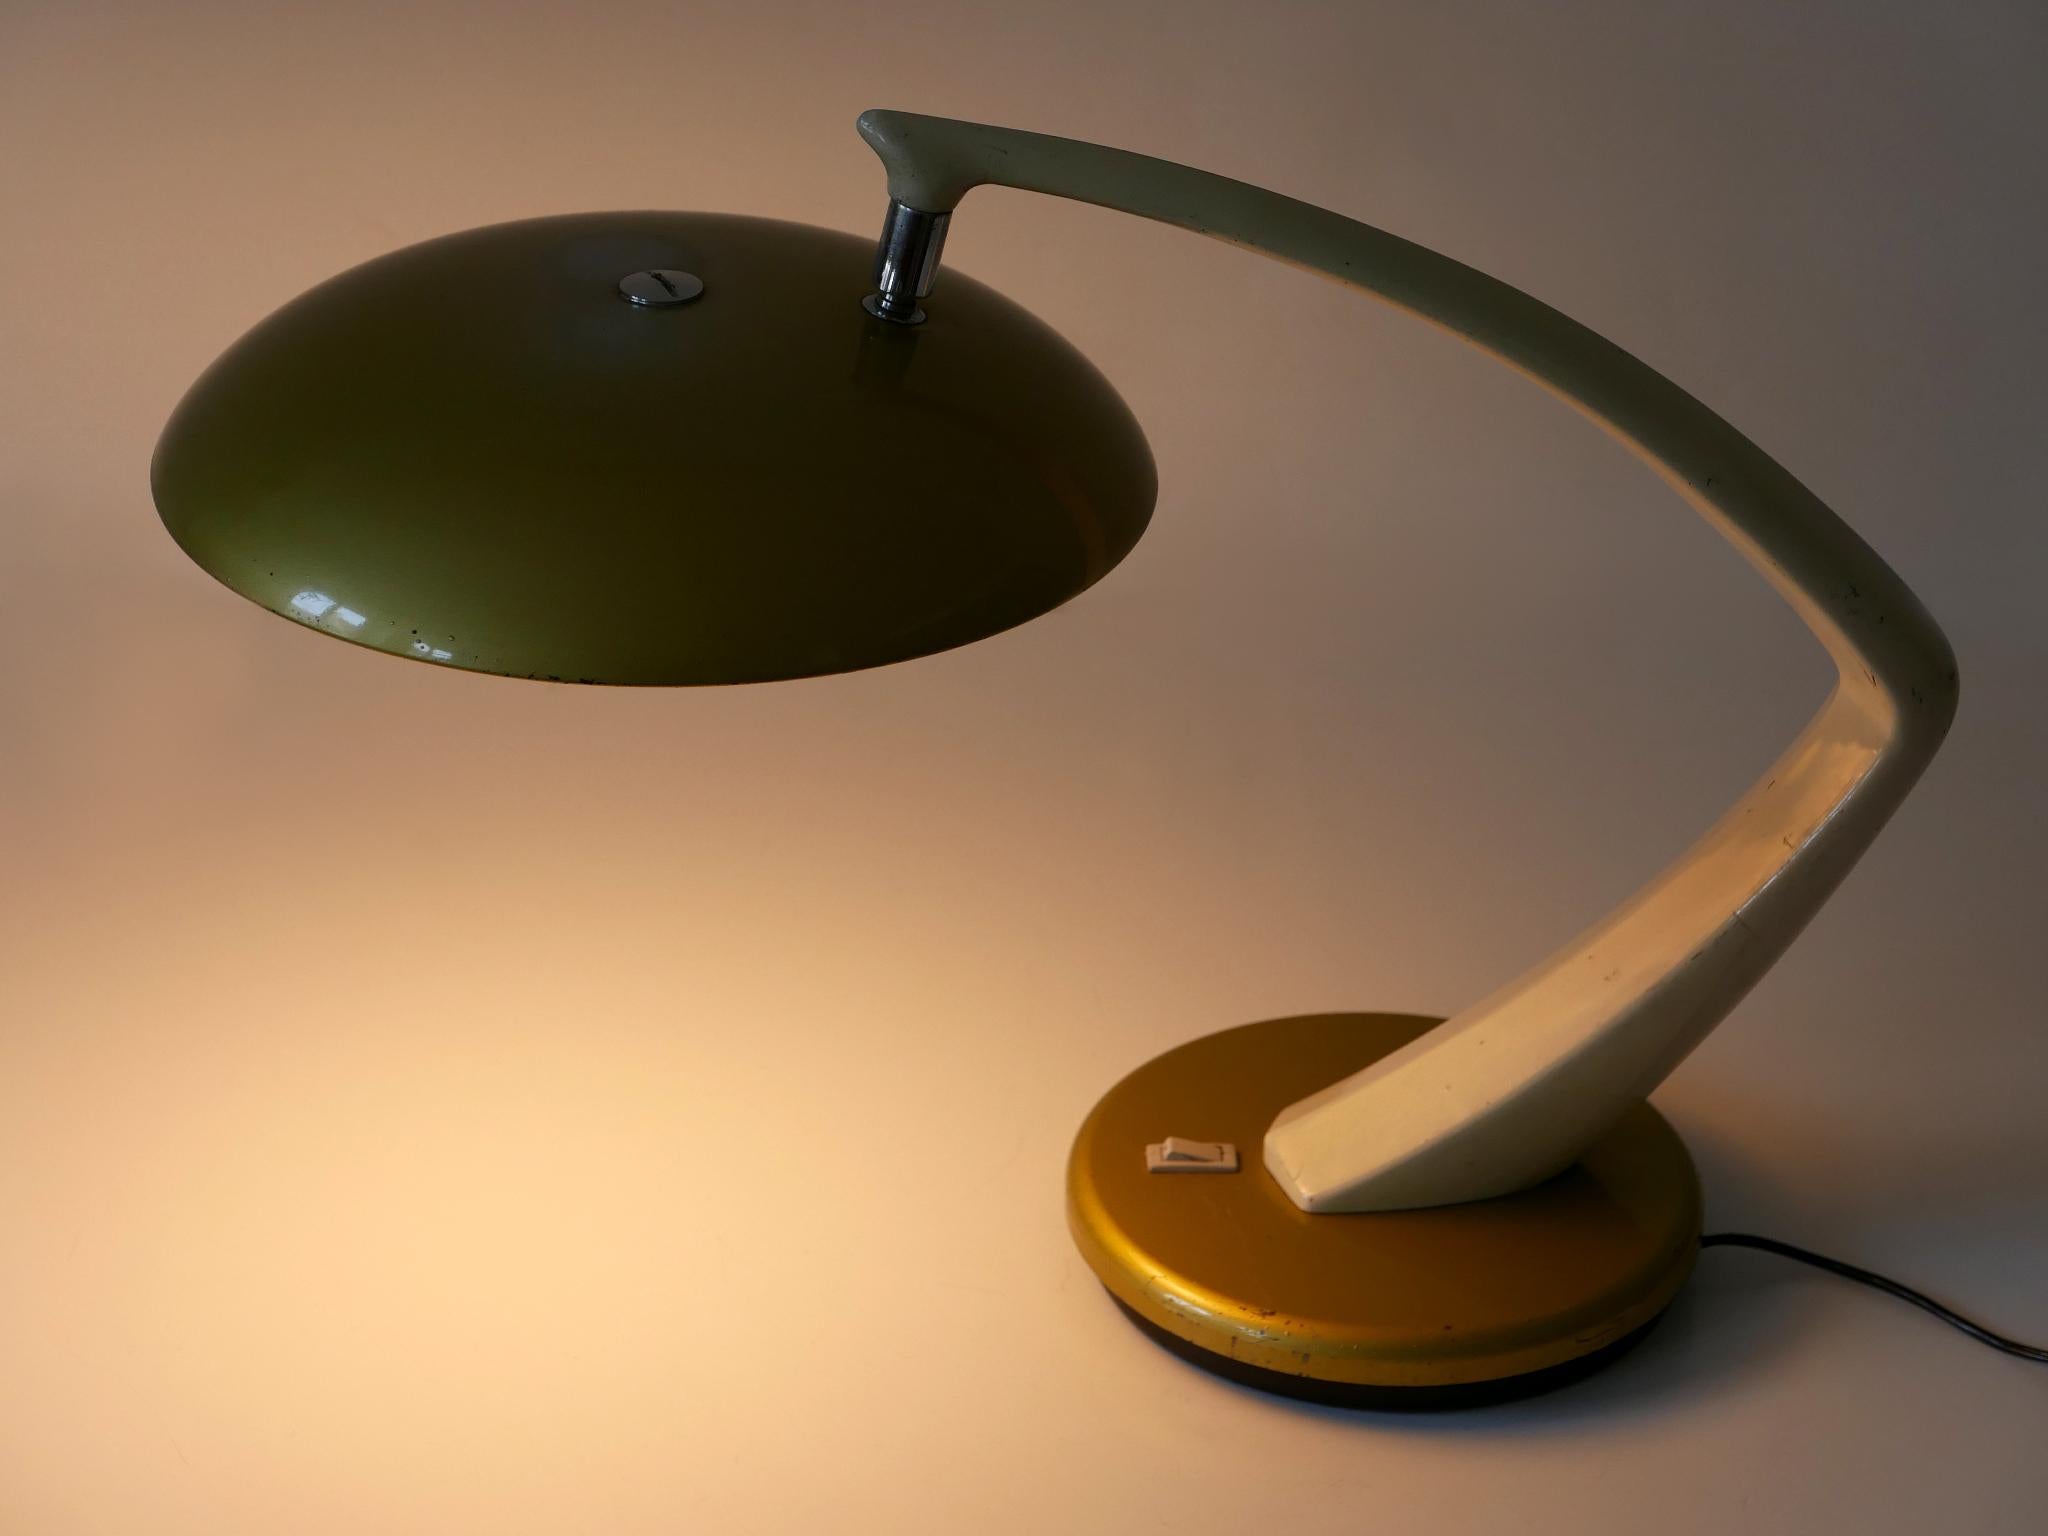 Elegante Mid Century Modern Tischlampe oder Schreibtischlampe 'Boomerang 64' in Gold und Creme Farbe. Lampenschirm drehbar. Entworfen und hergestellt von Fase, Spanien, 1960er Jahre.

Die Tischleuchte aus gold- und cremefarbenem Metall wird mit 2 x